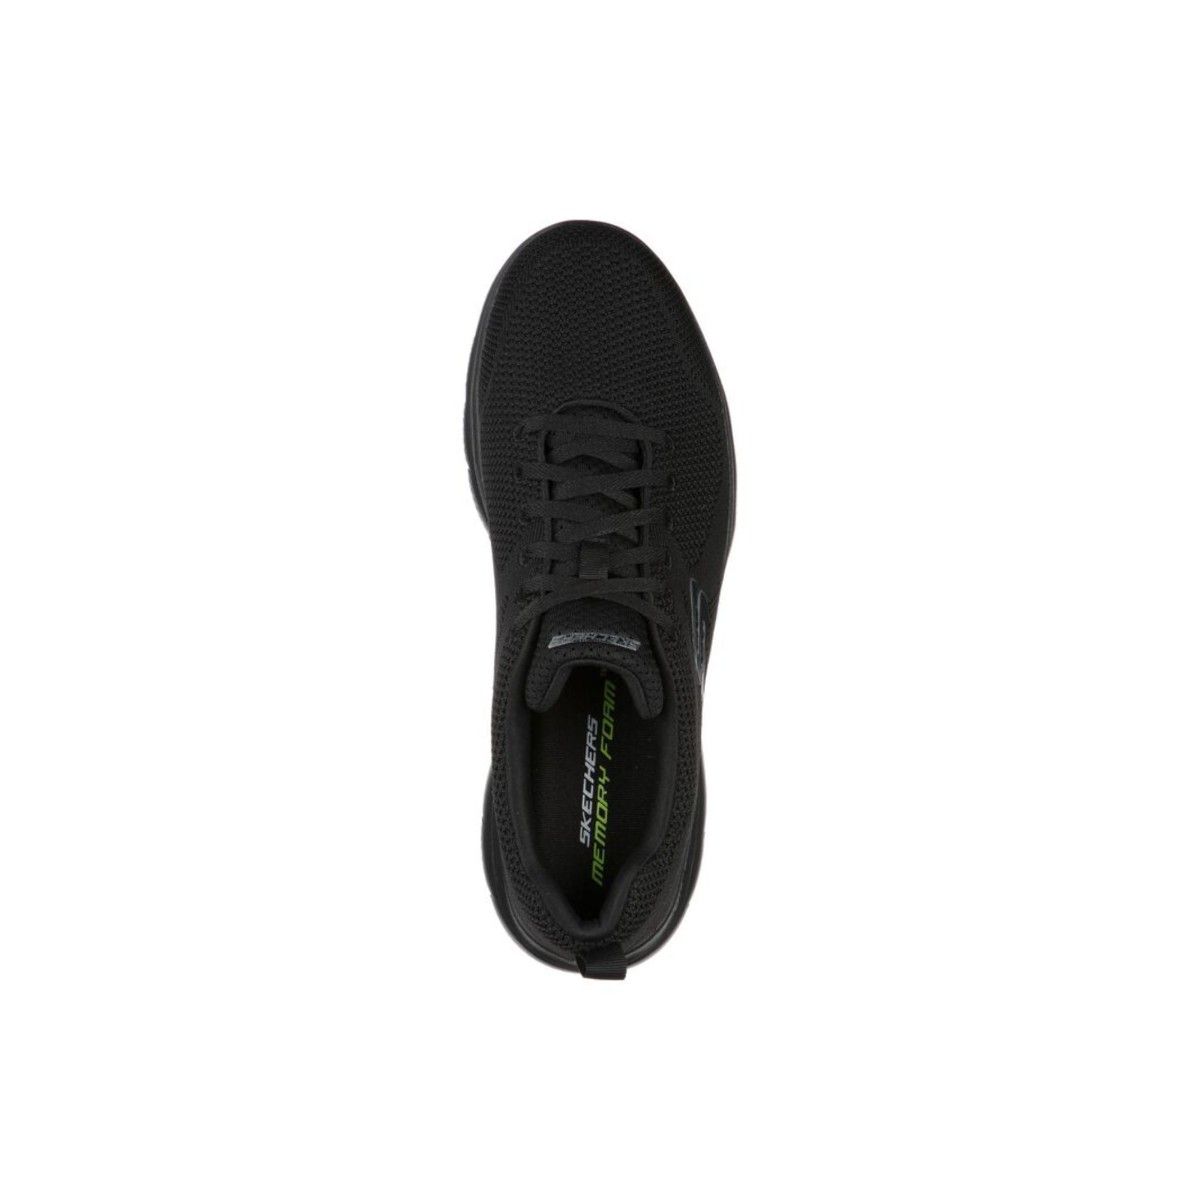 Buy Skechers Mens Summits - Brisbane Black Sneaker - 9 UK (10 US)  (232057ID-BBK) at Amazon.in